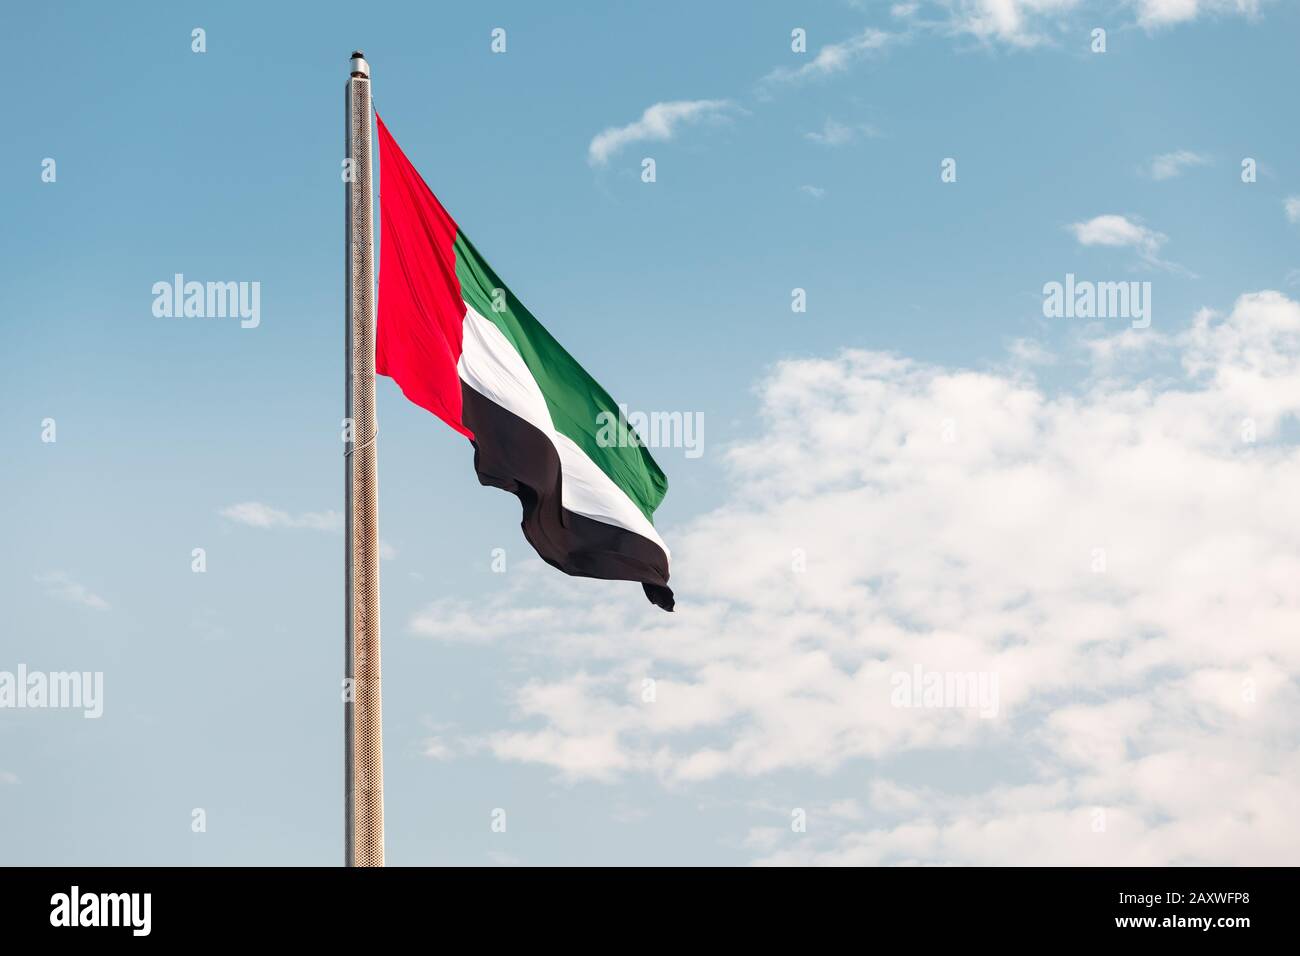 United Arab Emirates flag at blue sky background Stock Photo